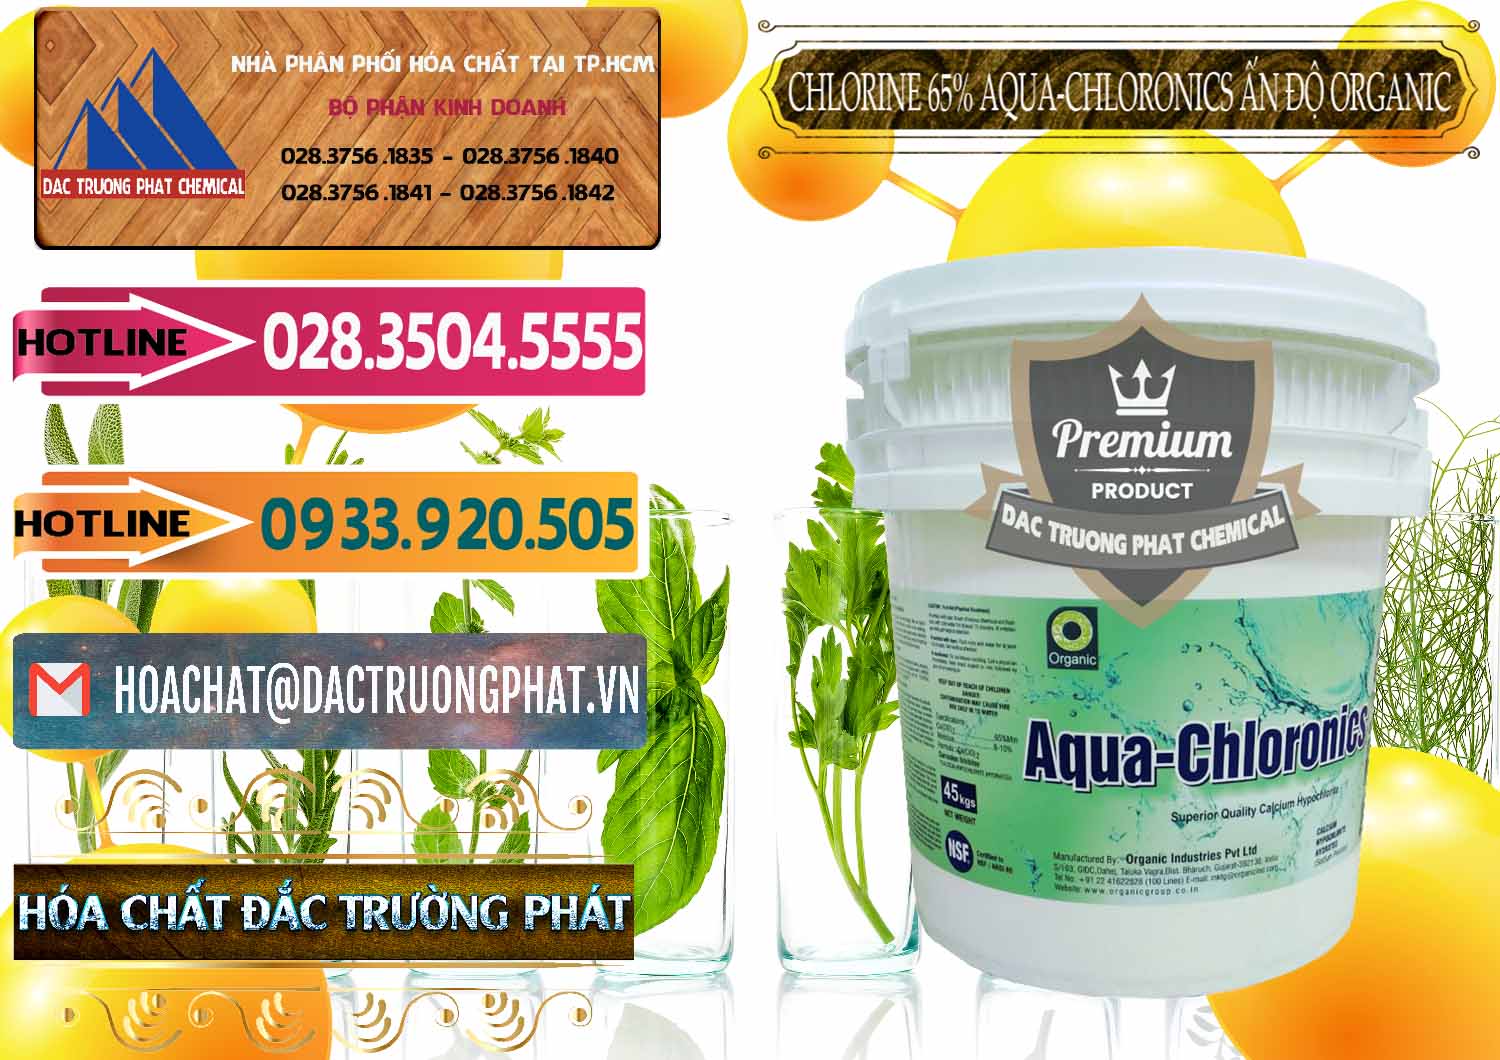 Công ty chuyên cung cấp _ bán Chlorine – Clorin 65% Aqua-Chloronics Ấn Độ Organic India - 0210 - Cty chuyên cung cấp & bán hóa chất tại TP.HCM - dactruongphat.vn